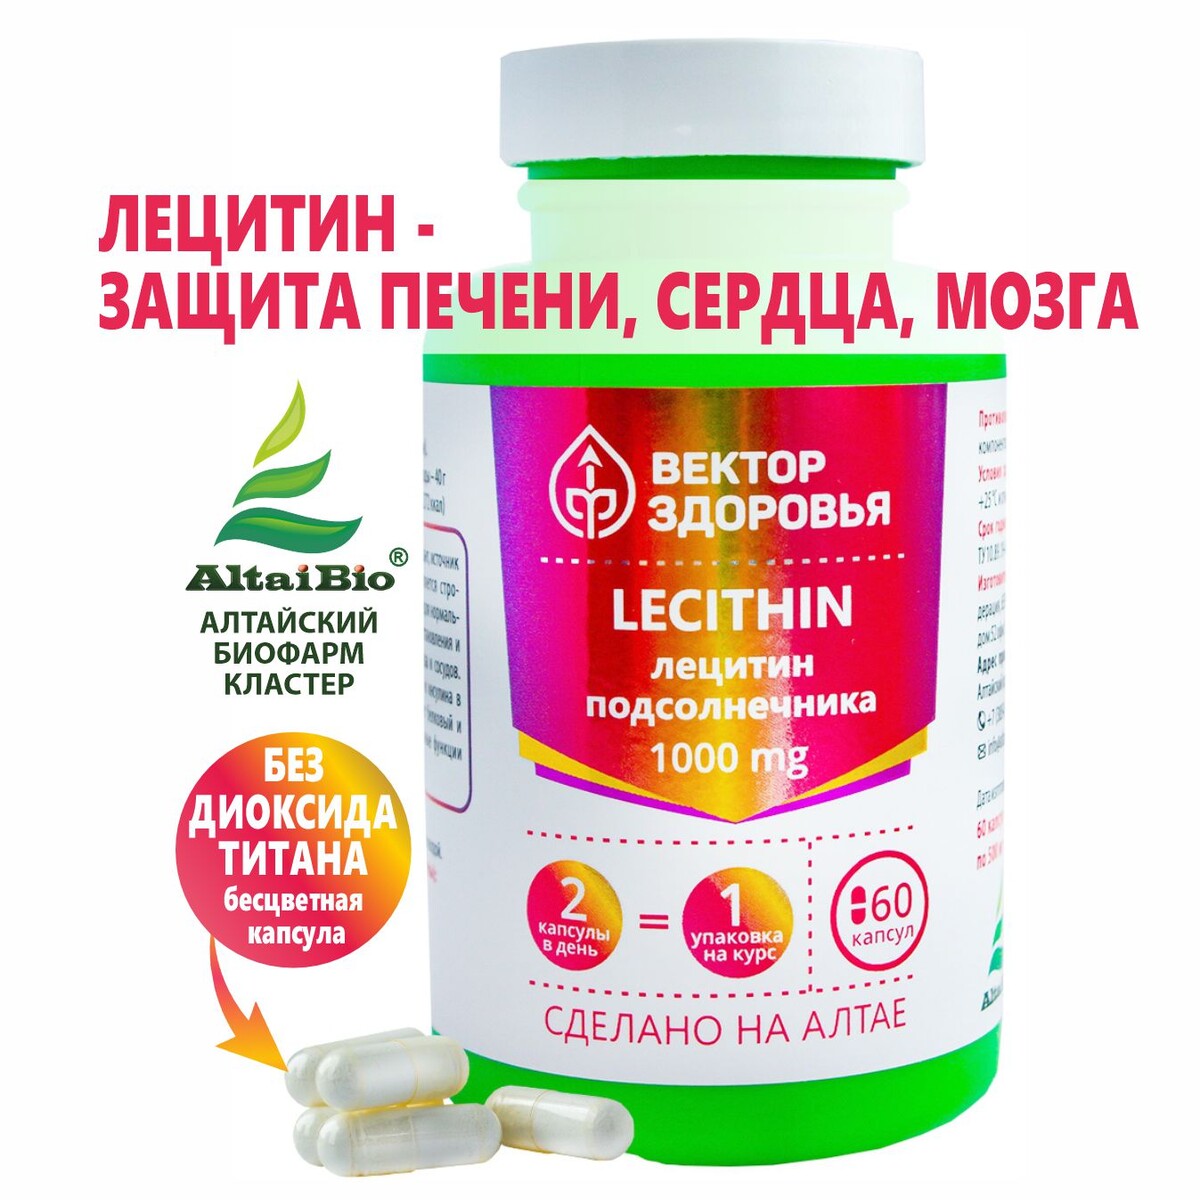 Комплекс lecithin лецитин подсолнечника nutriheal ноотропный комплекс для нервной системы 3 мг в 1 таблетке холин микс 60 табл